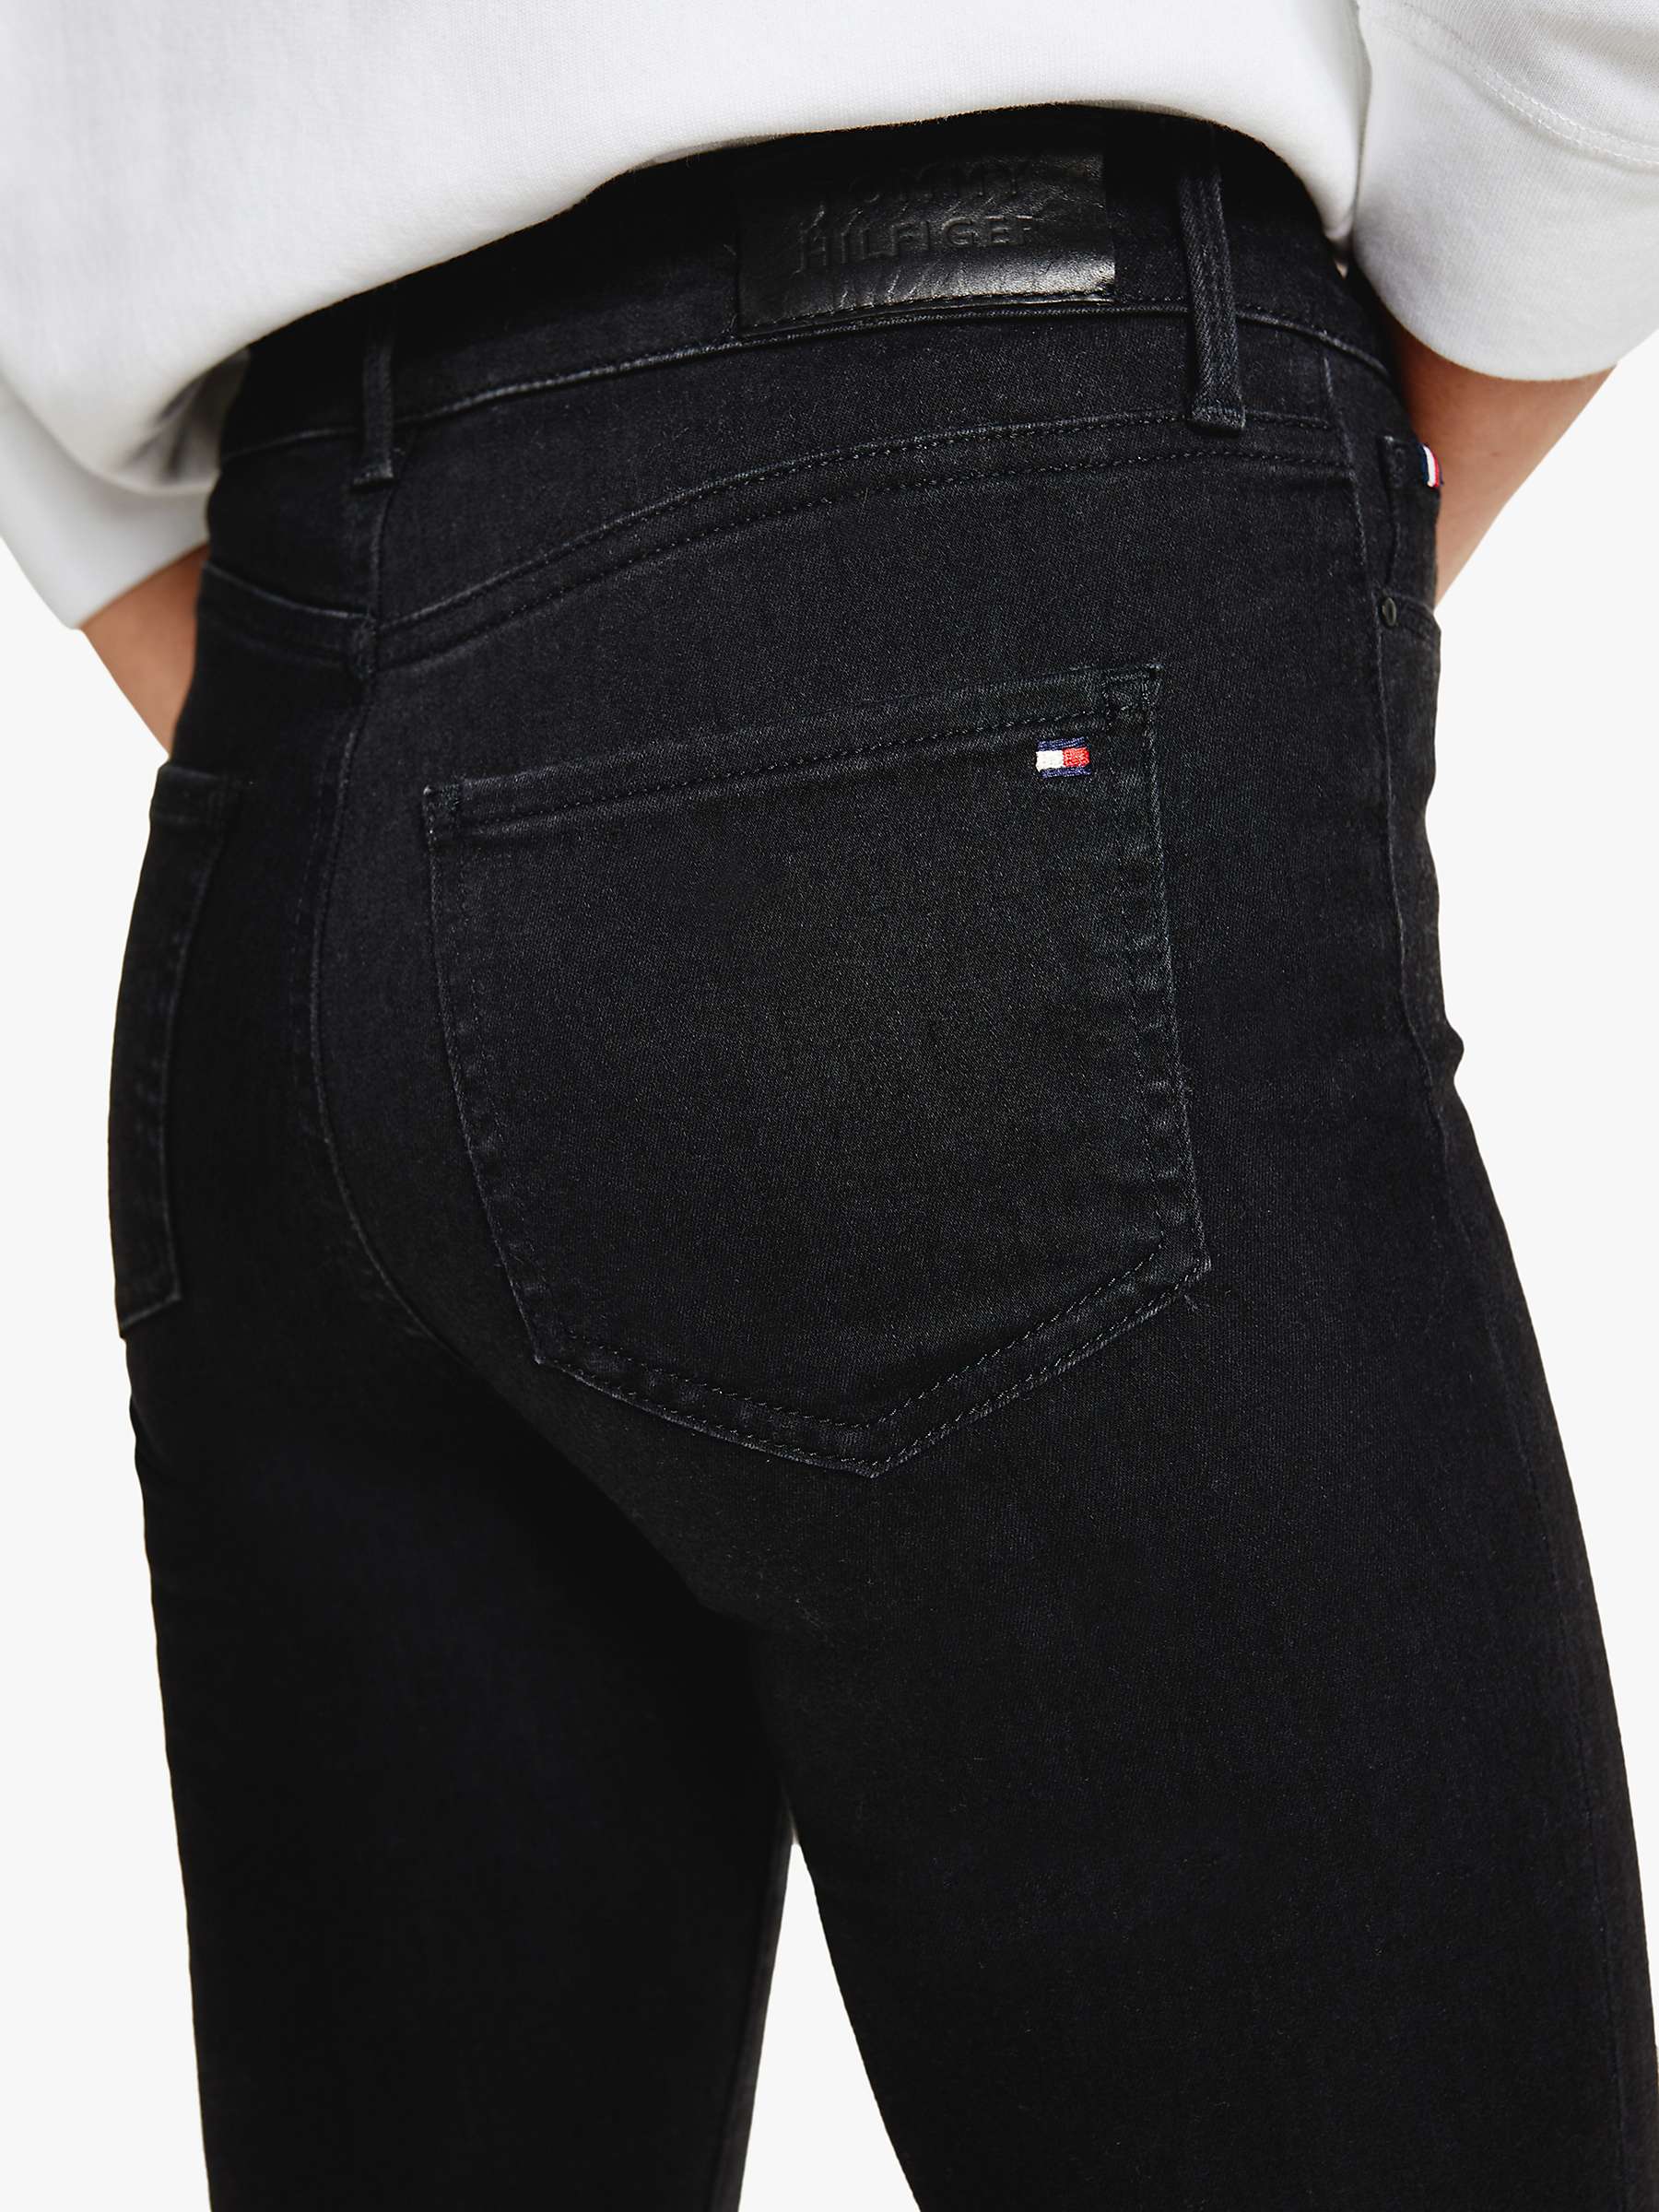 Buy Tommy Hilfiger Harlem Skinny Jeans Online at johnlewis.com